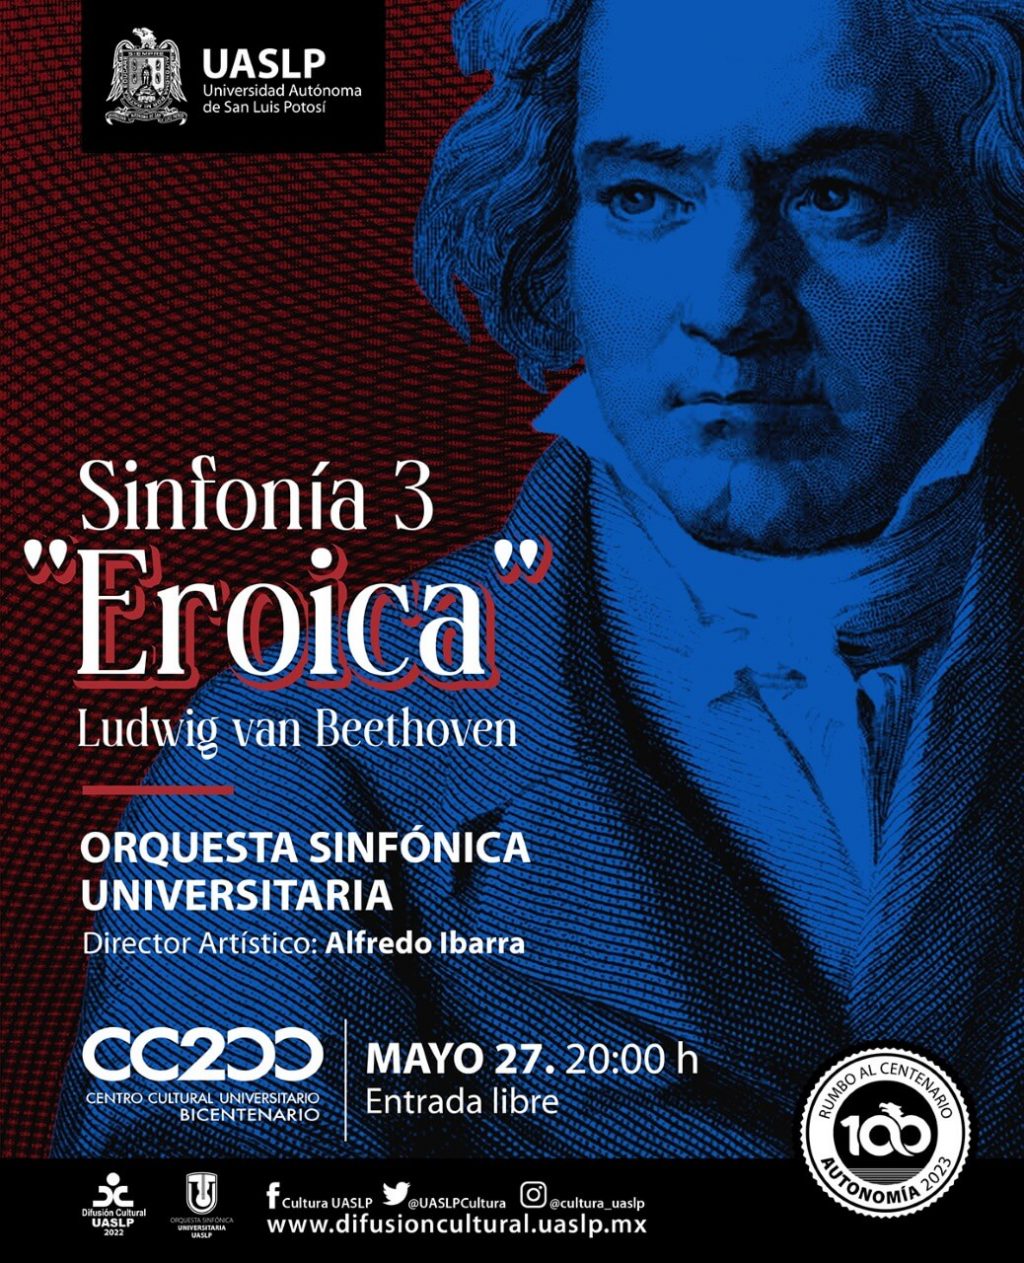 Secretaría de Difusión Cultural presenta: Sinfonía "Eroica" Ludwig van Beethoven en el Centro Cultural Universitario Bicentenaro